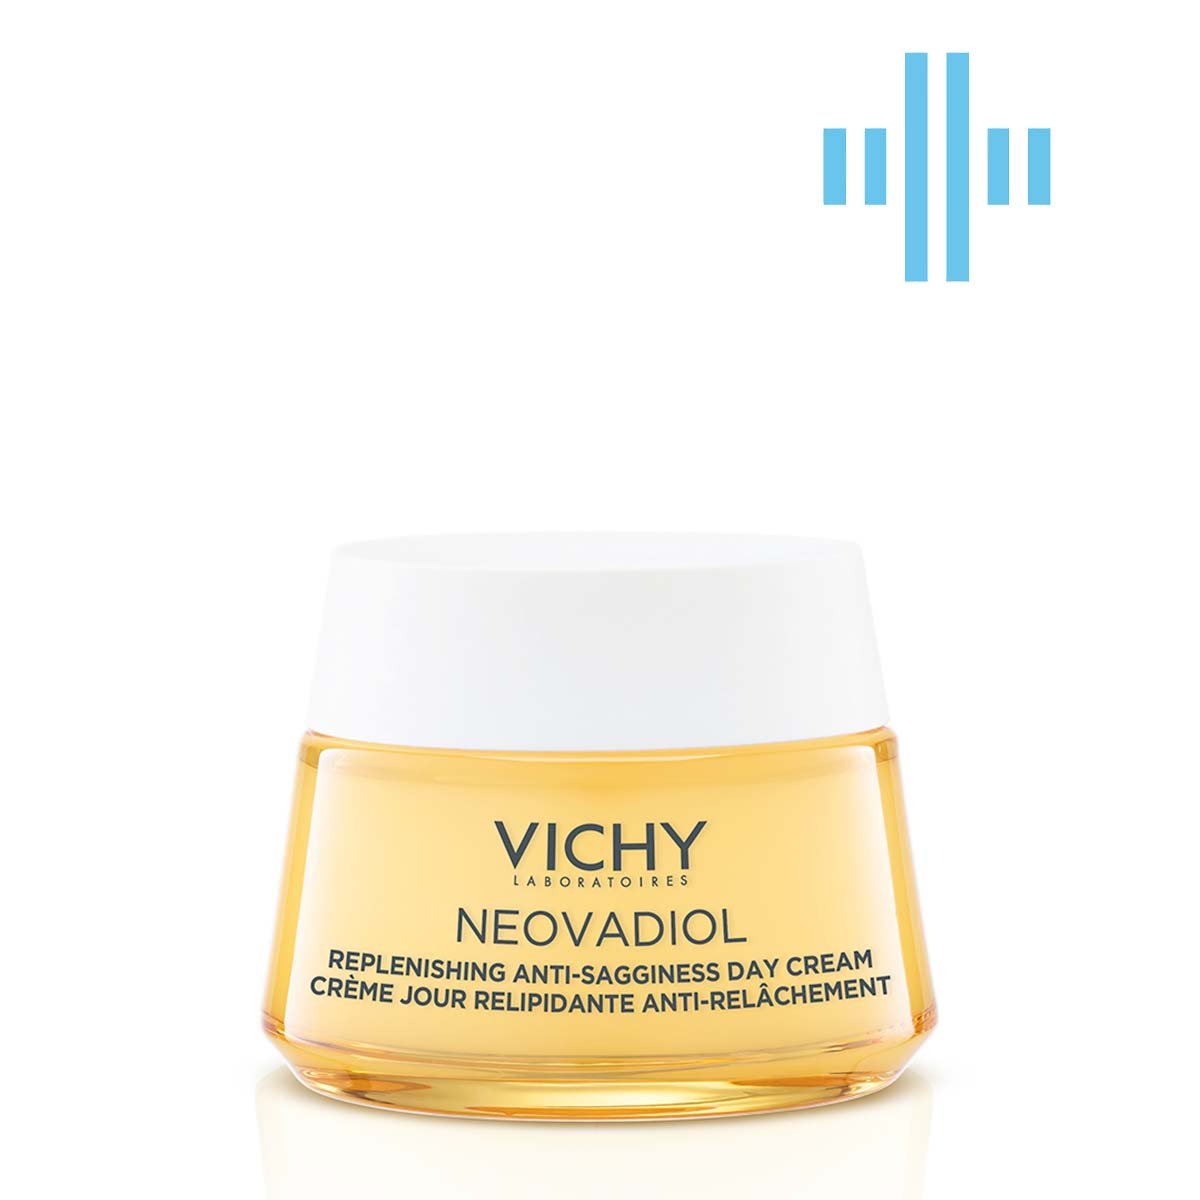 Антивозрастной крем Vichy Neovadiol для уменьшения глубоких морщин и восстановление уровня липидов в коже, 50 мл (MB421400) - фото 1